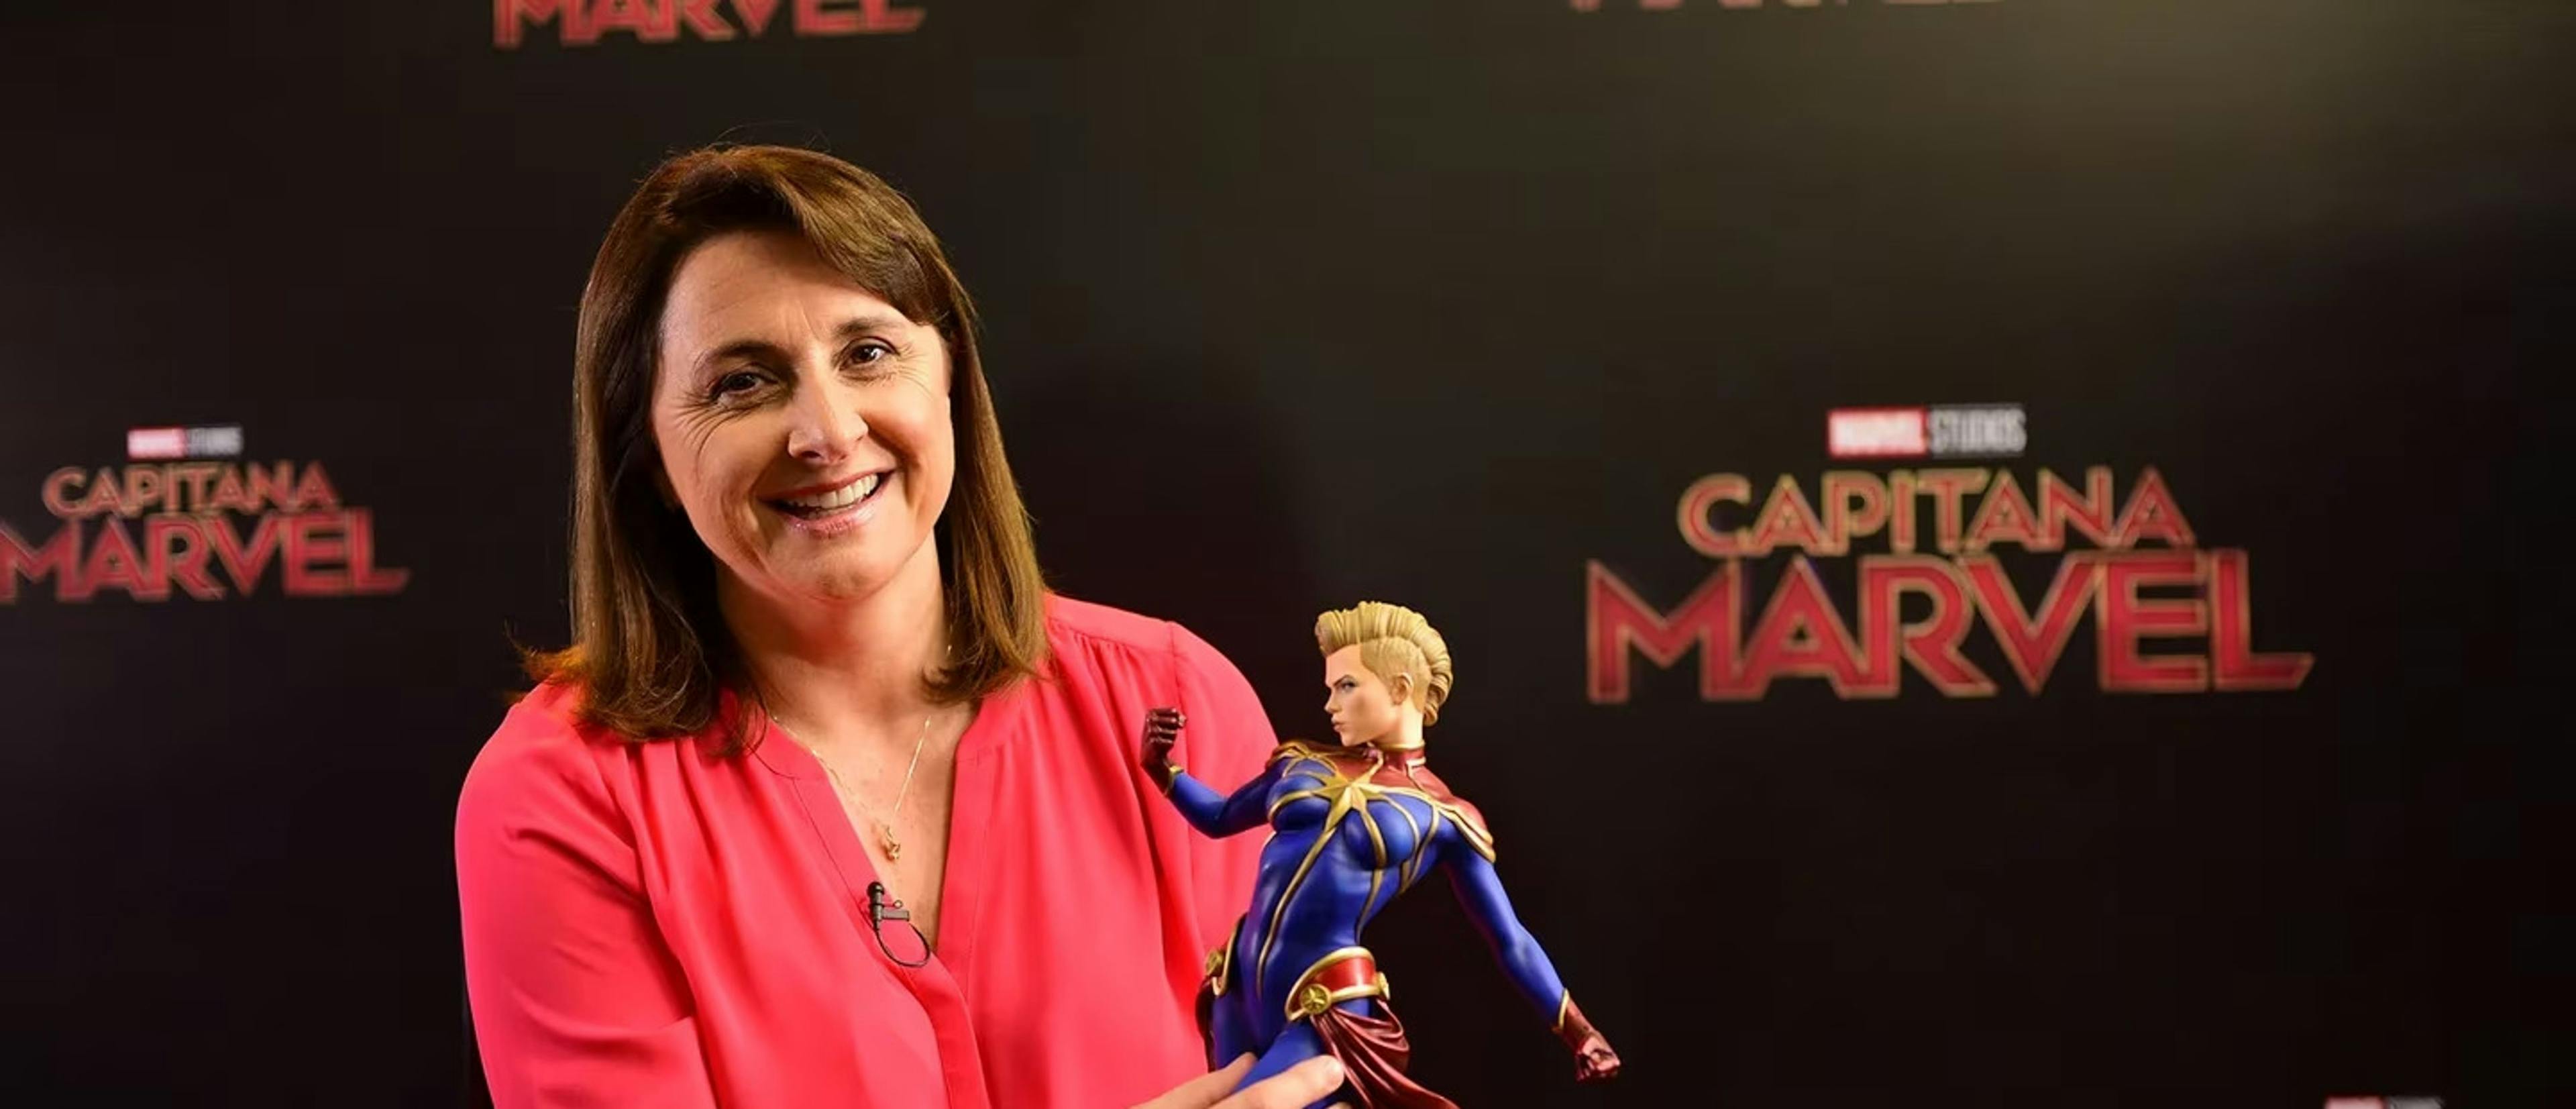 Victoria Alonso, exproductora de Marvel, juega con una muñeca de la Capitana Marvel